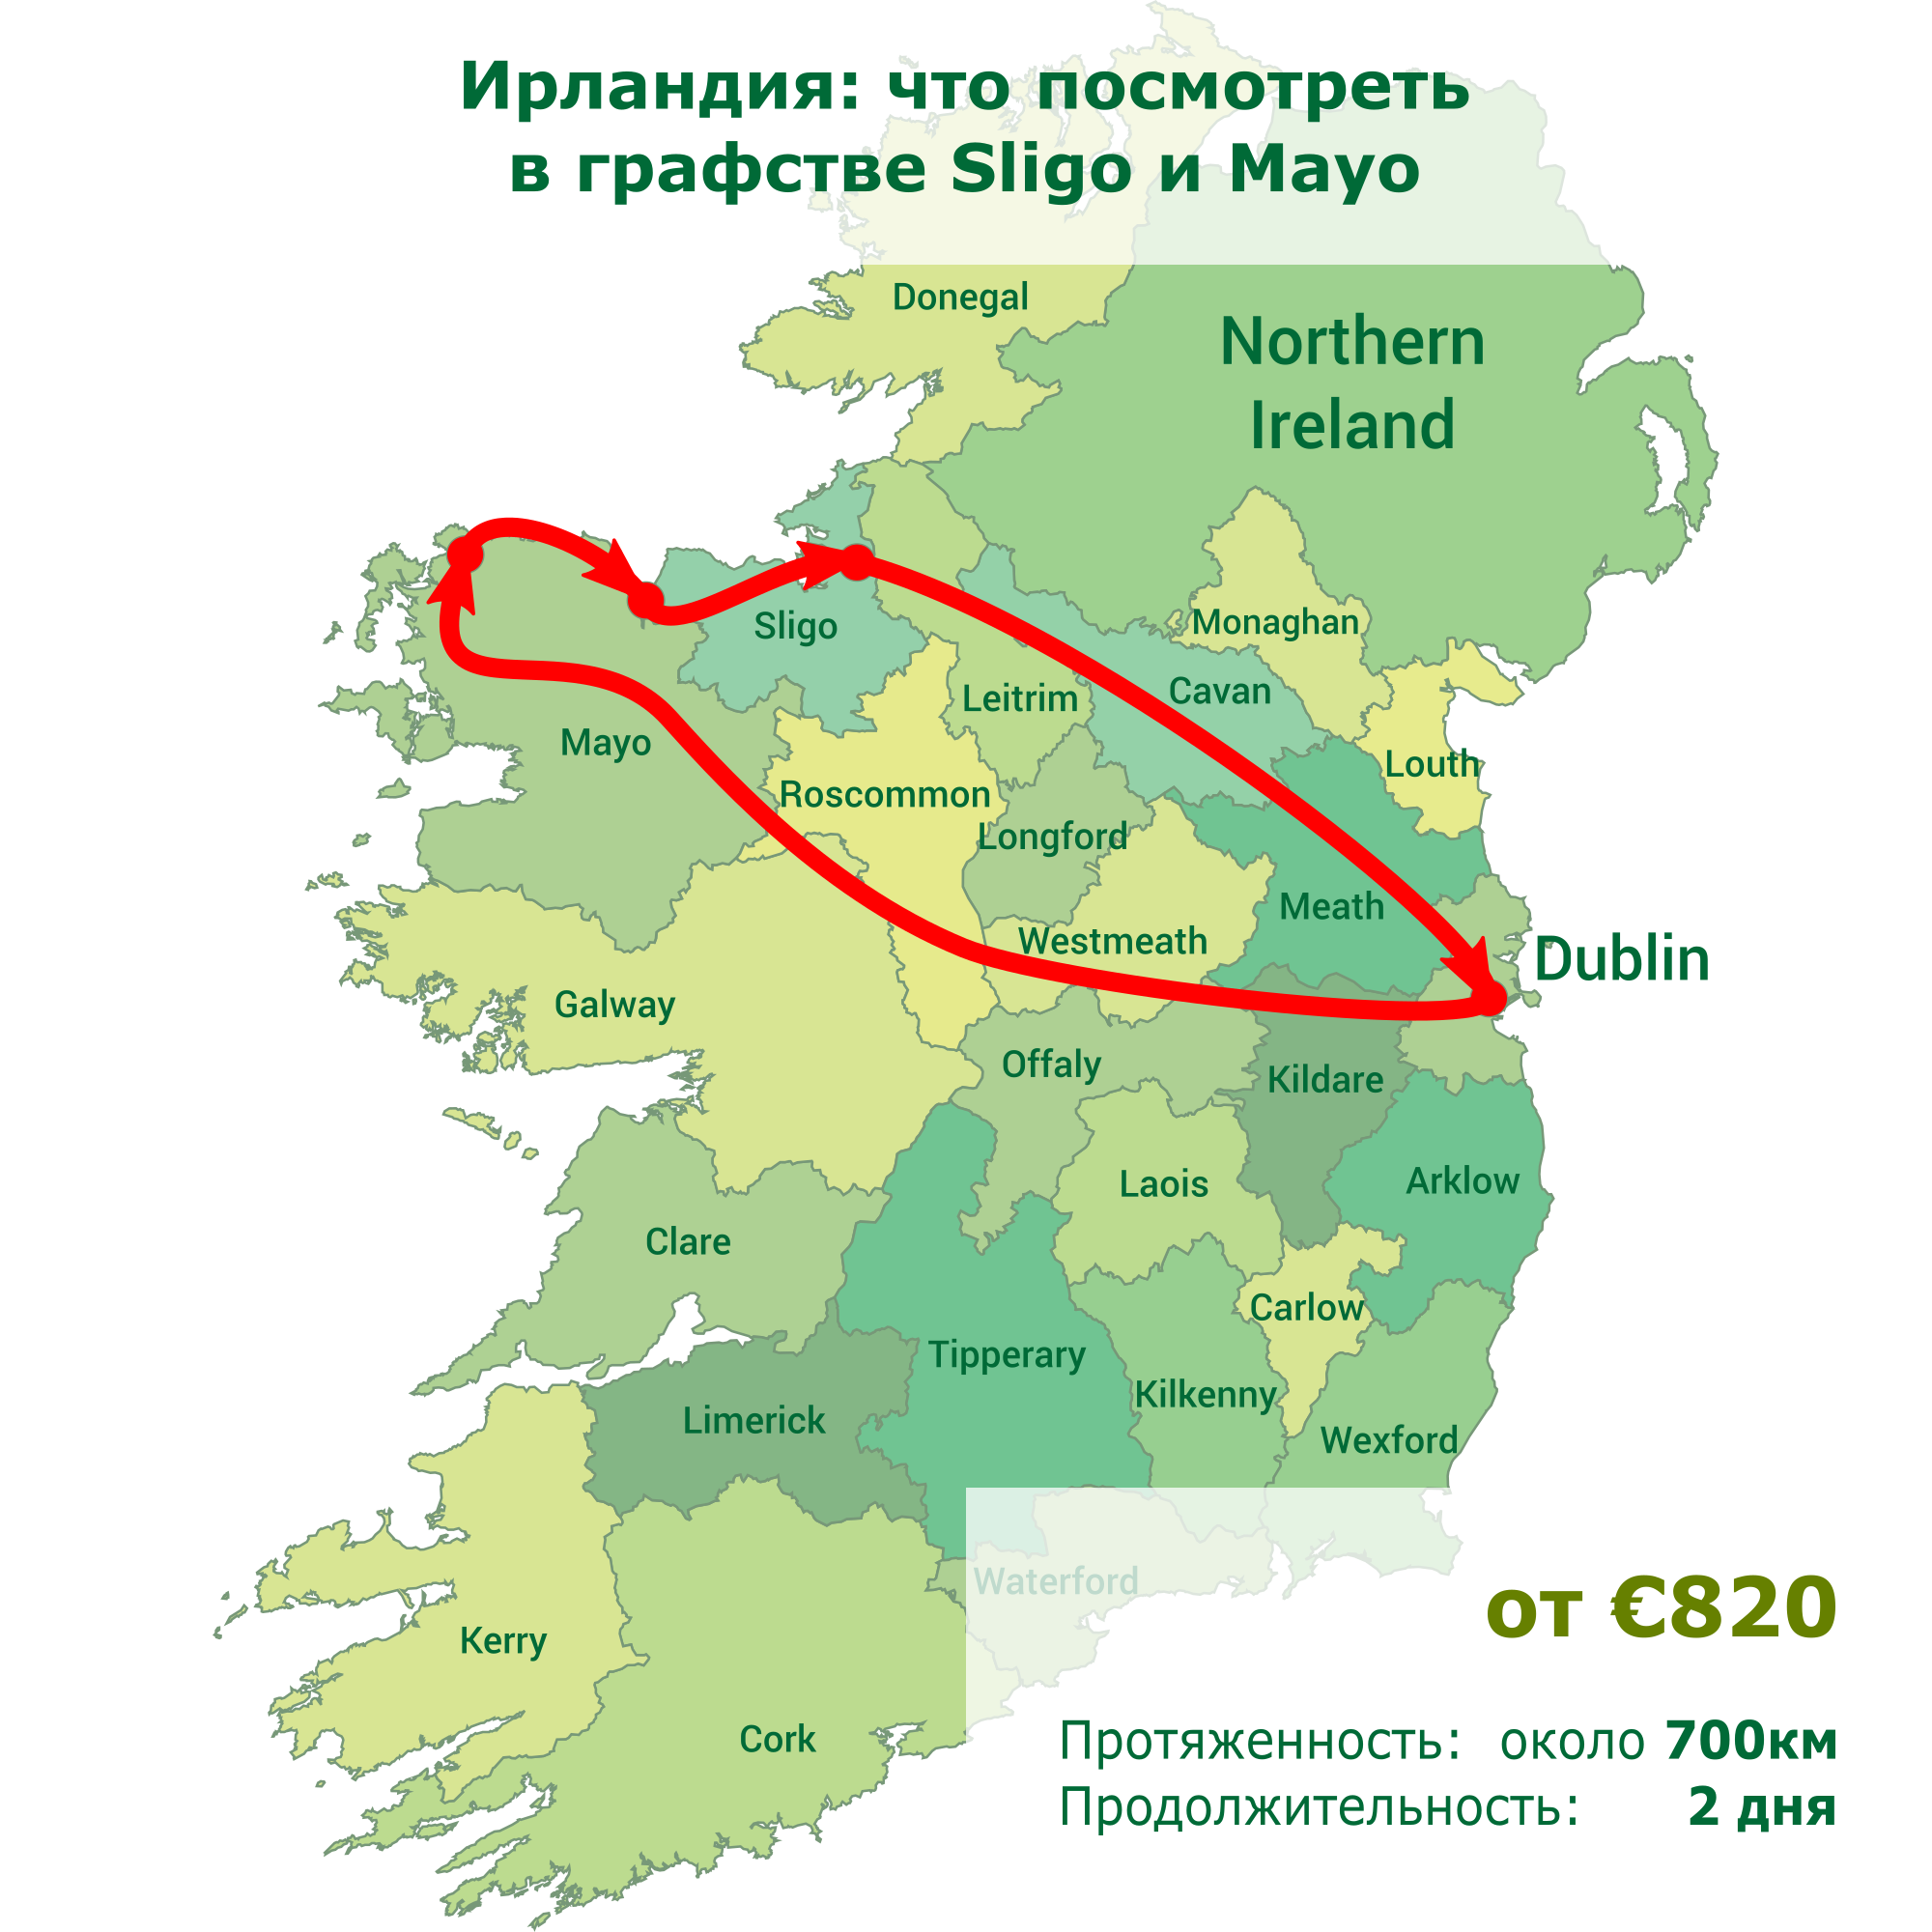 Ирландия: что посмотреть в графстве Sligo и Mayo